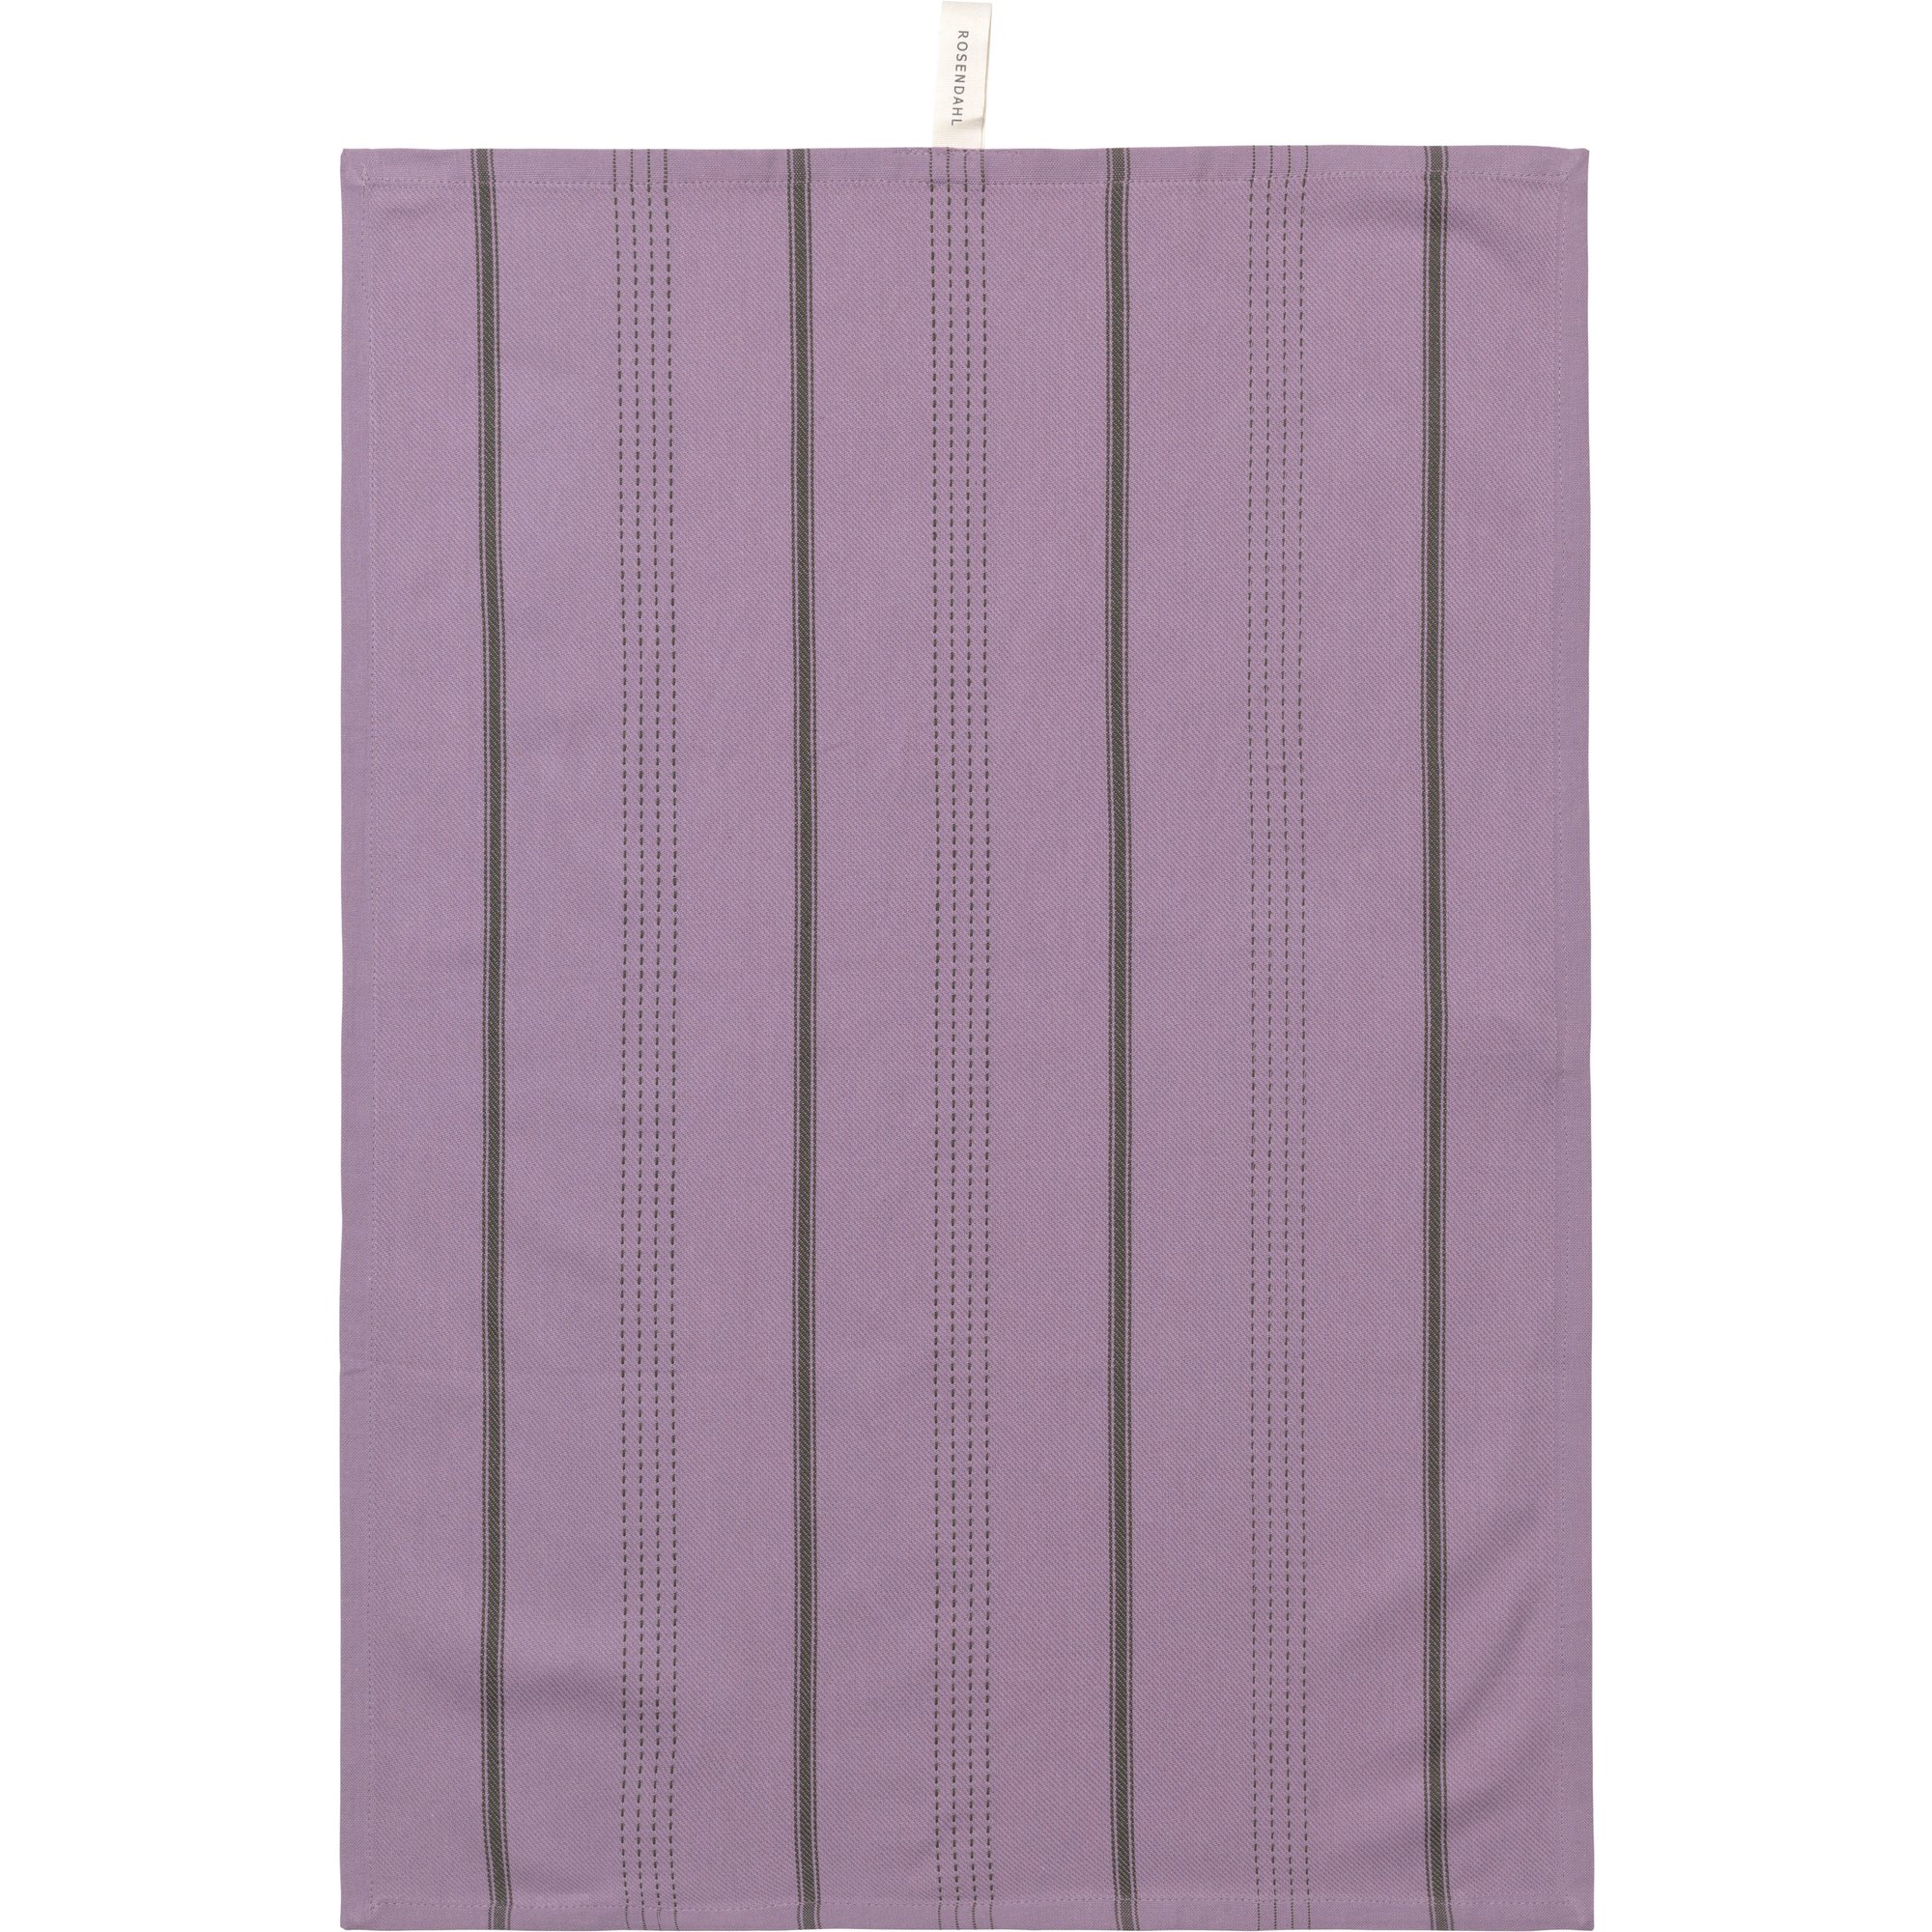 Produktfoto för Rosendahl Beta kökshandduk, 50 x 70 cm, lavender